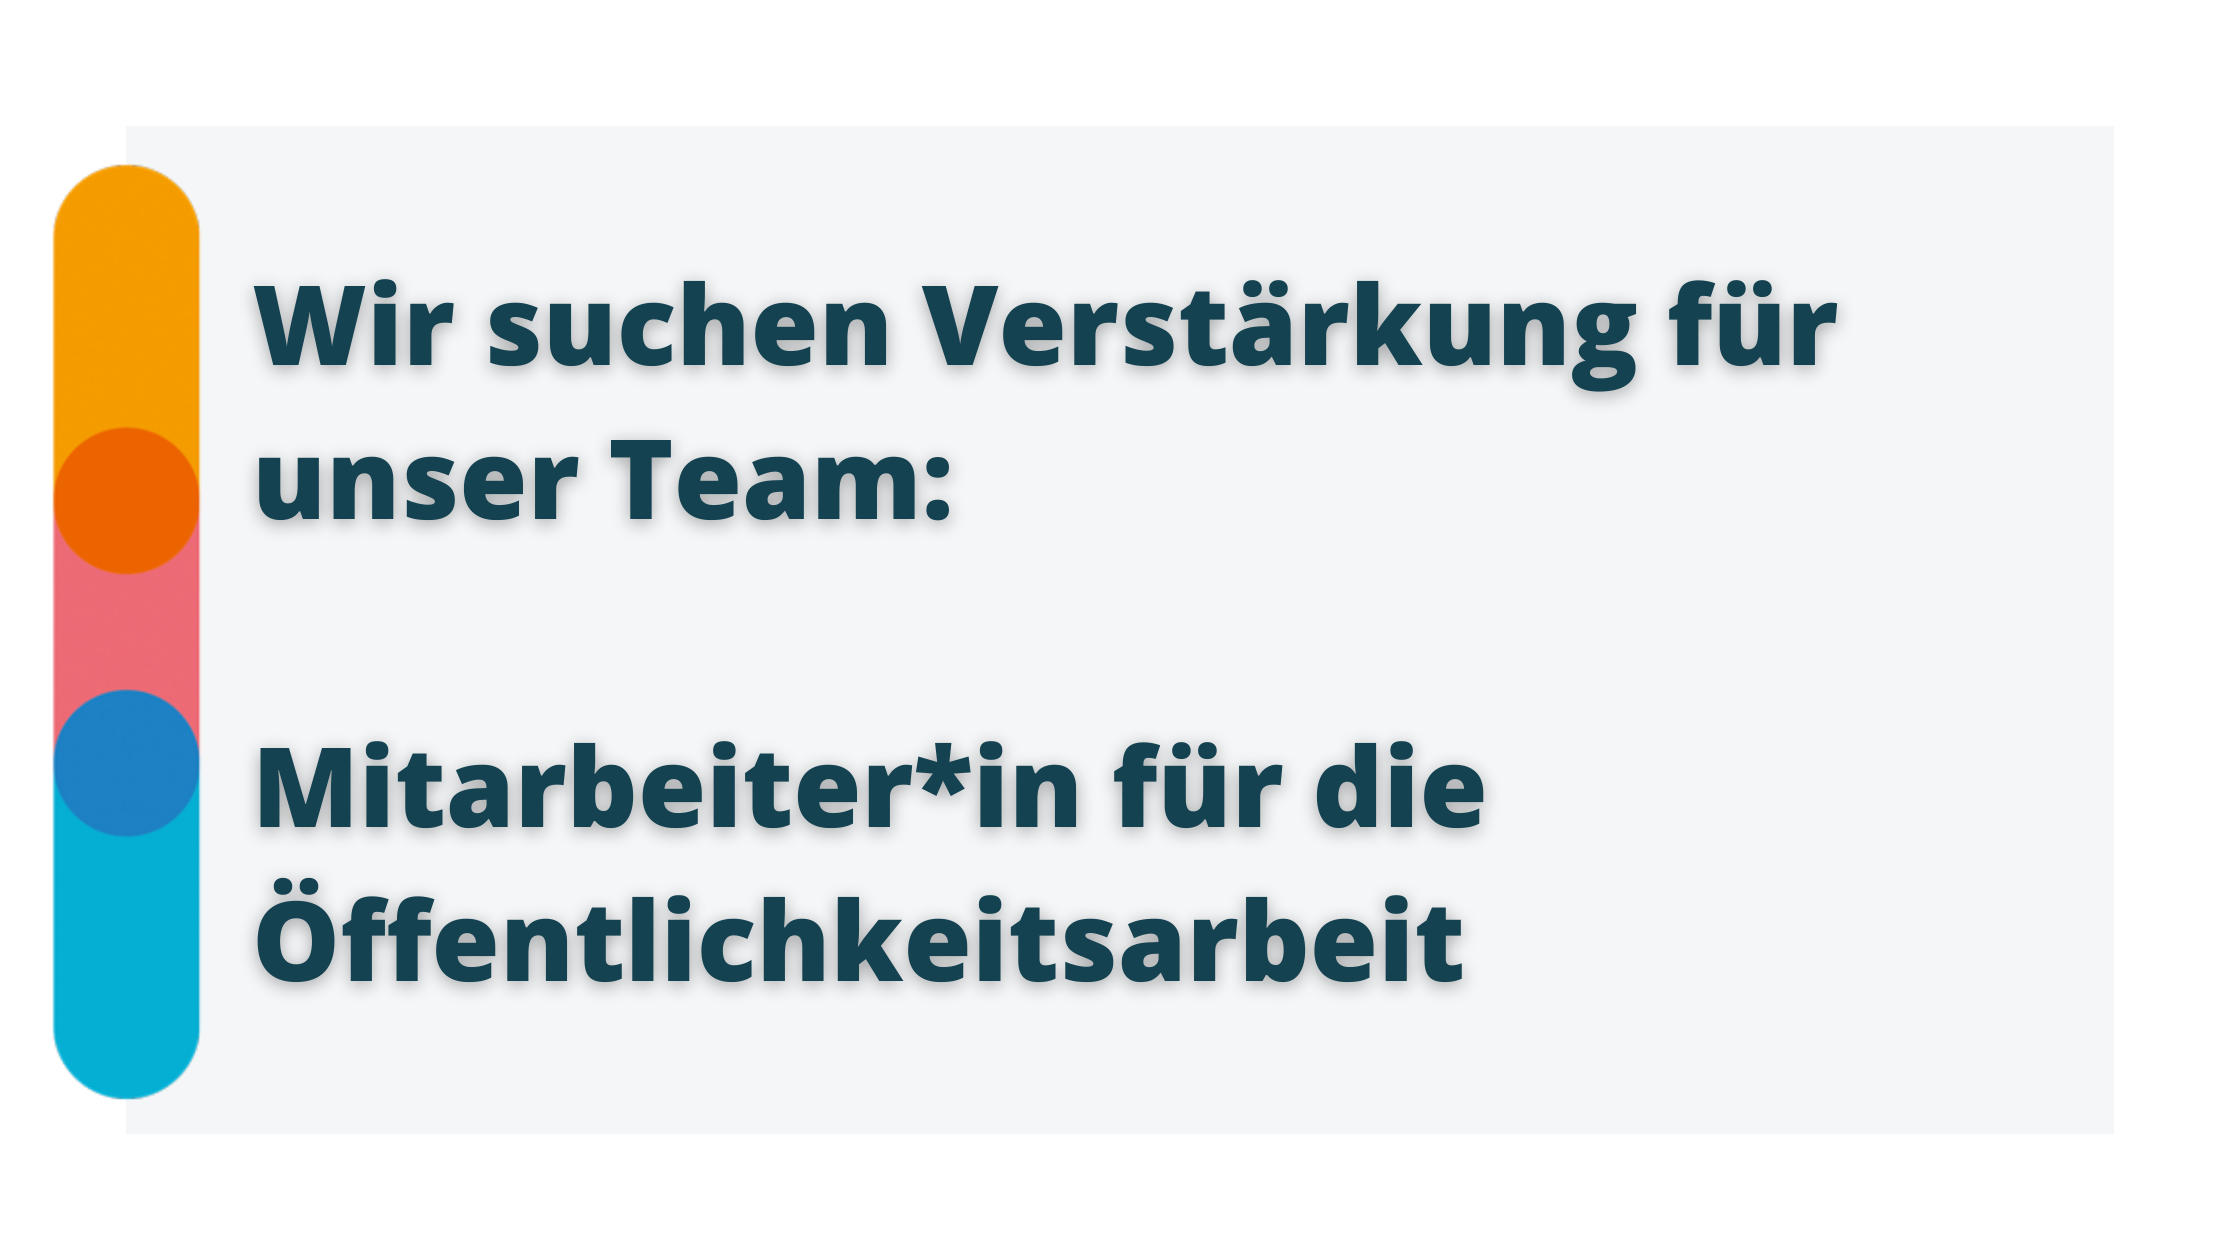 Blaue Schrift auf grauem Grund: "Wir suchen Verstärkung für unser Team: Mitarbeiter*in für die Öffentlichkeitsarbeit". Links der Icon von B.U.D. Bayern: ein Balken in den Farben orange, rosa und blau.